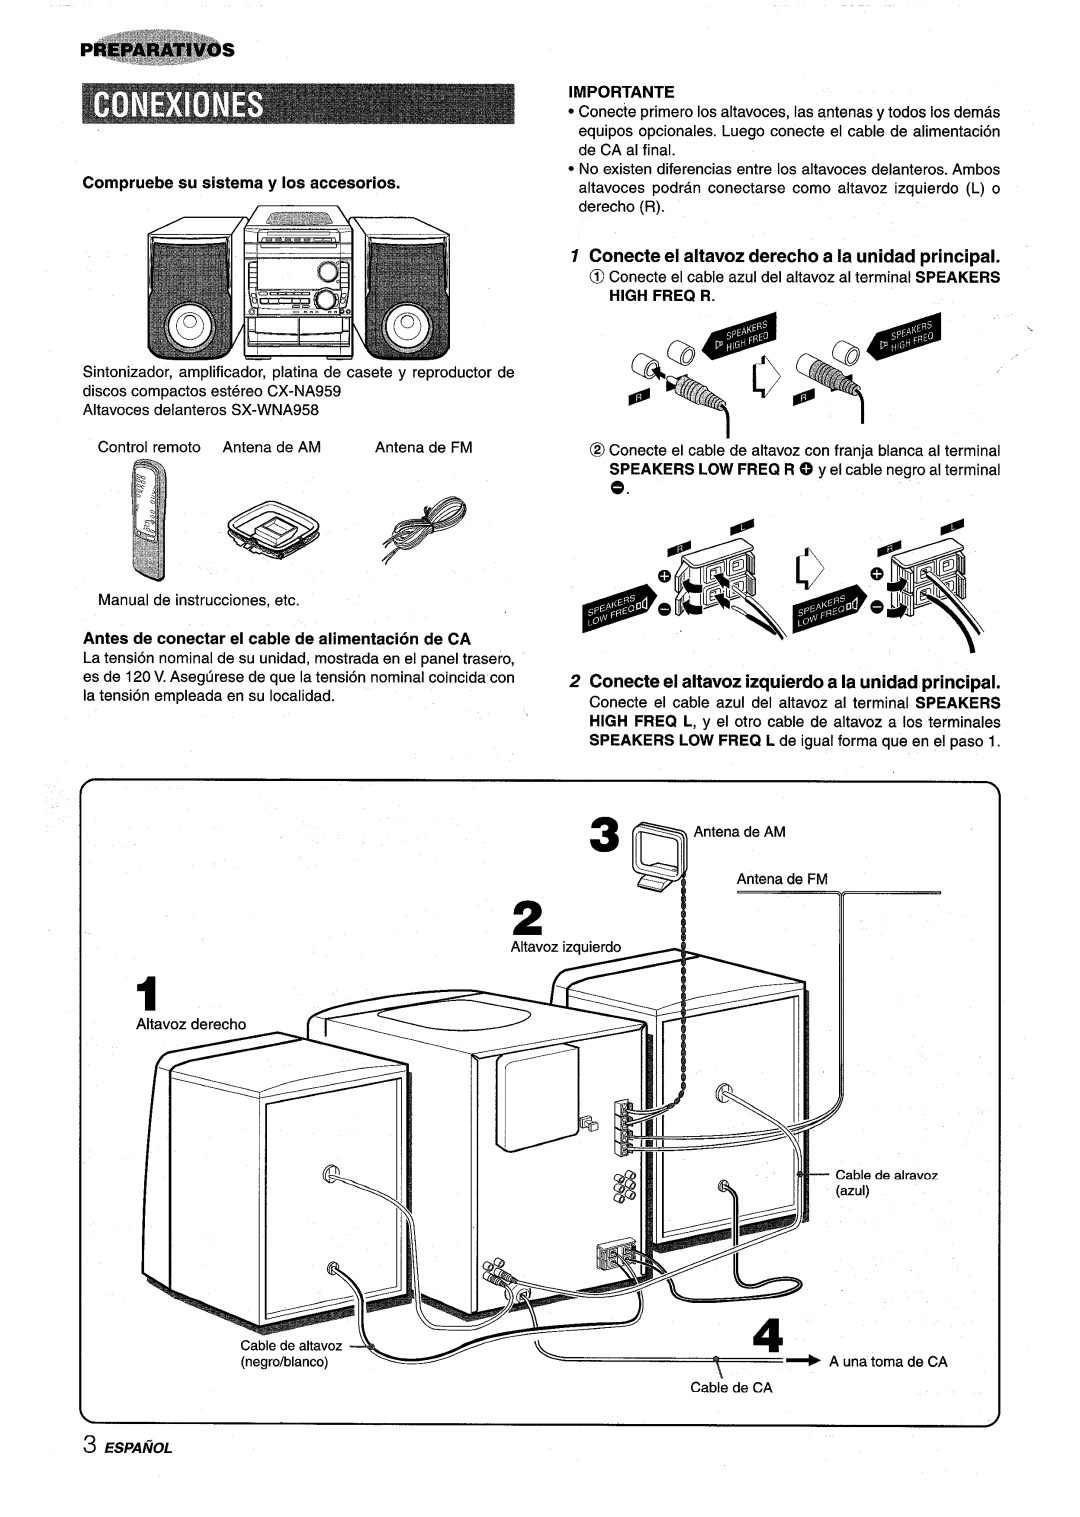 Sony NSX-A959 manual 3 ~AntenadeAM, Conecte el altavoz derecho a la unidad principal, Importante 